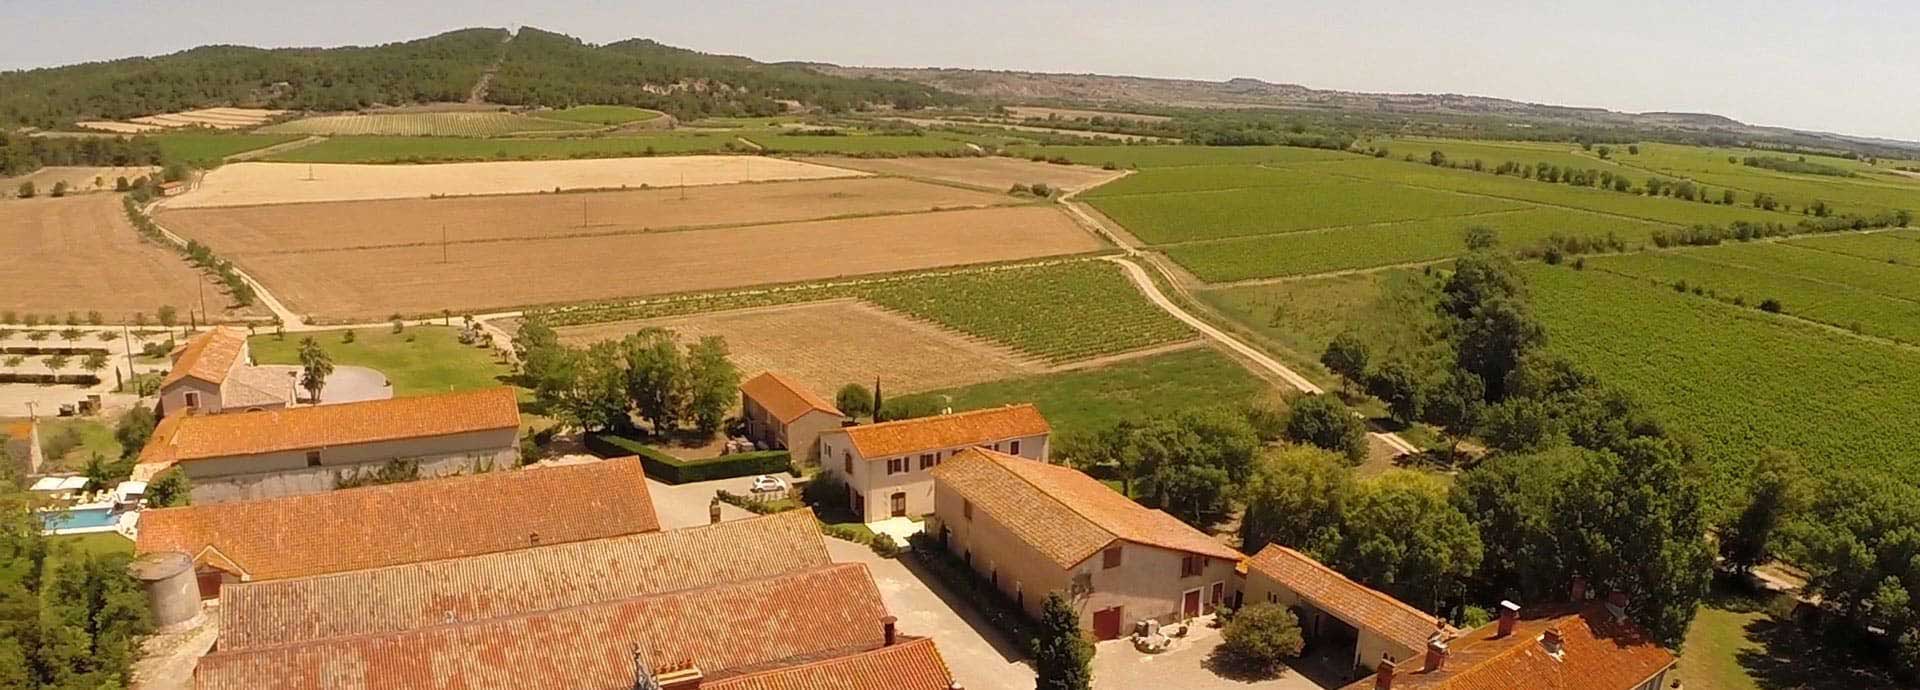 Vue aérienne du domaine de la Vernède, location de gîte dans l’Hérault